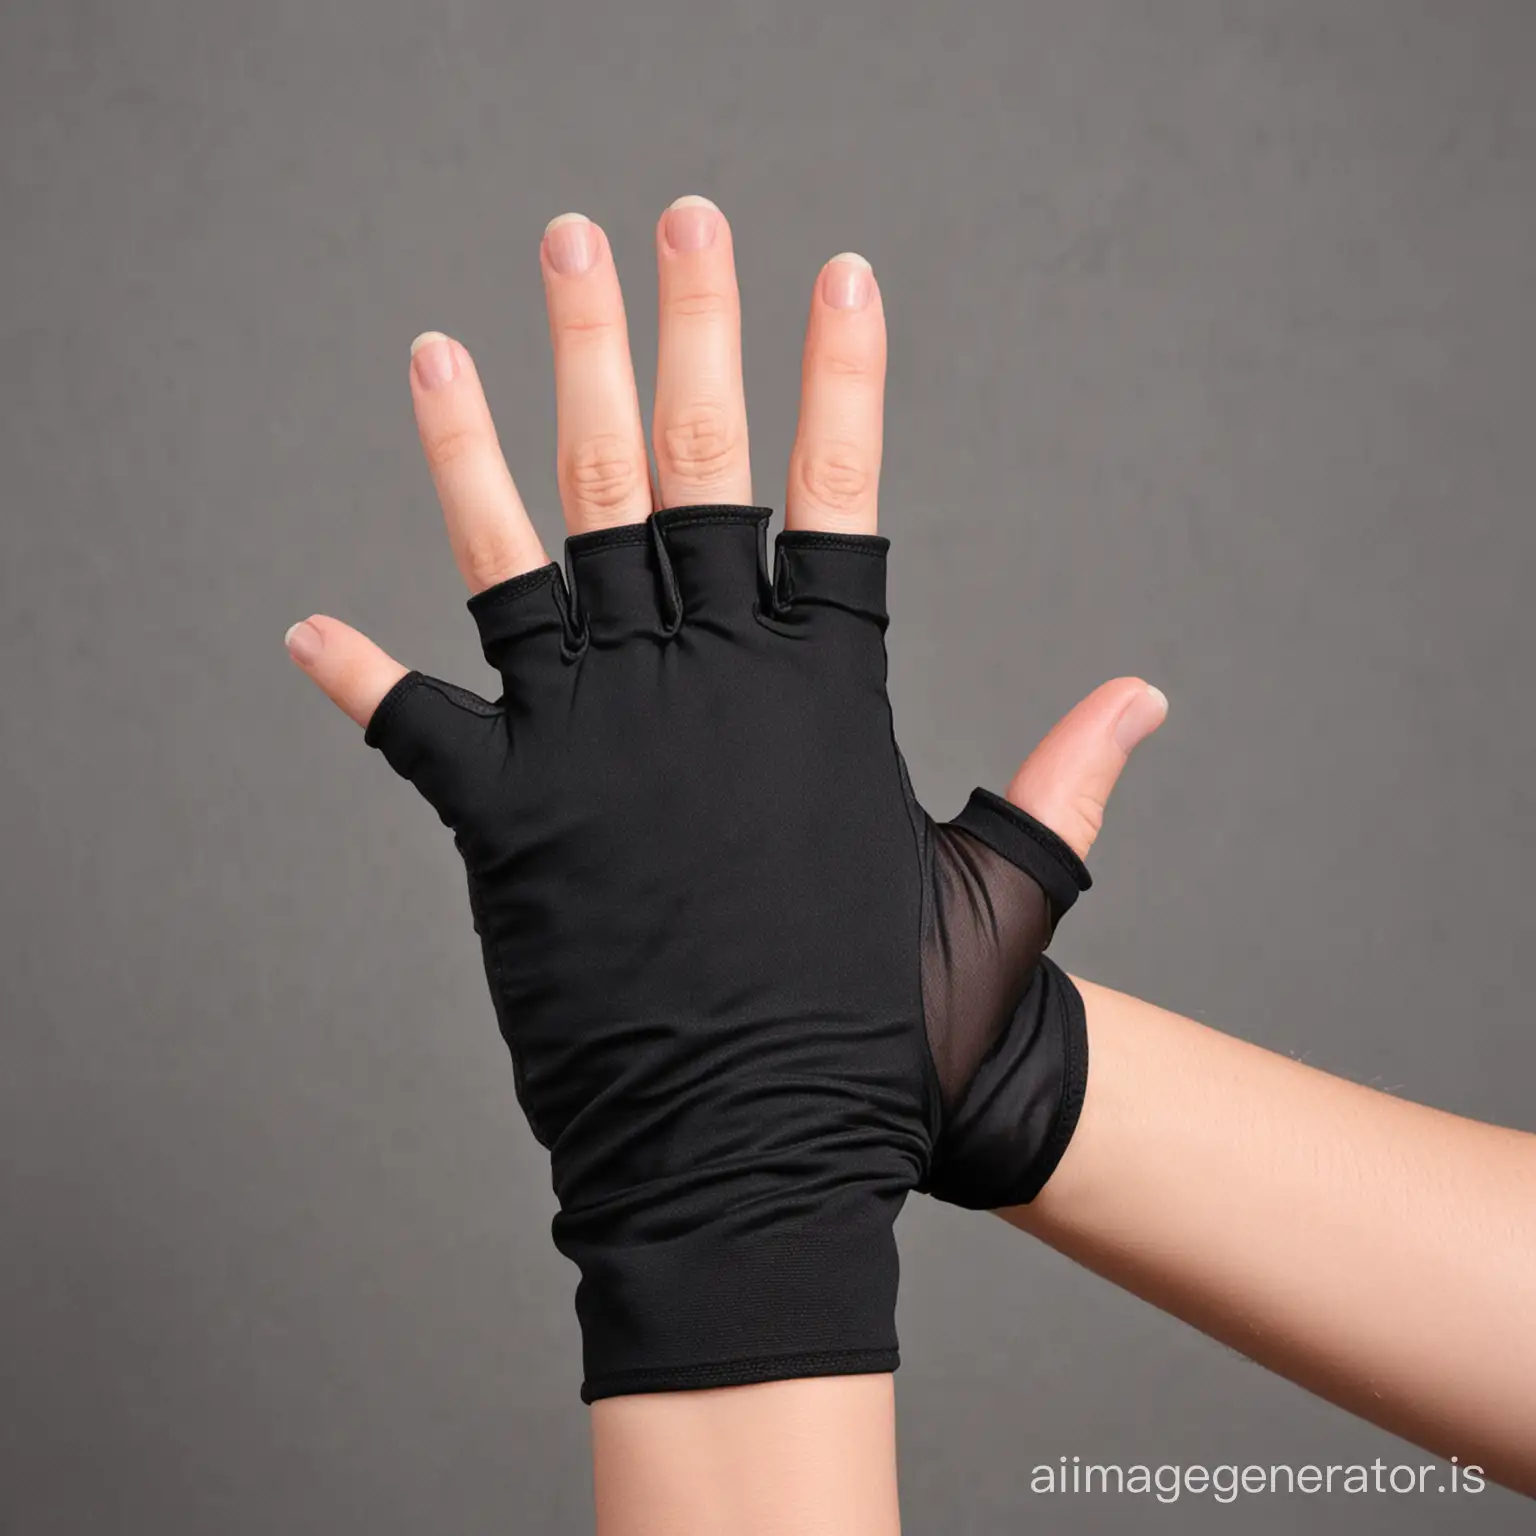 Black-Nylon-Fingerless-Gloves-with-Concealed-Fourth-Finger